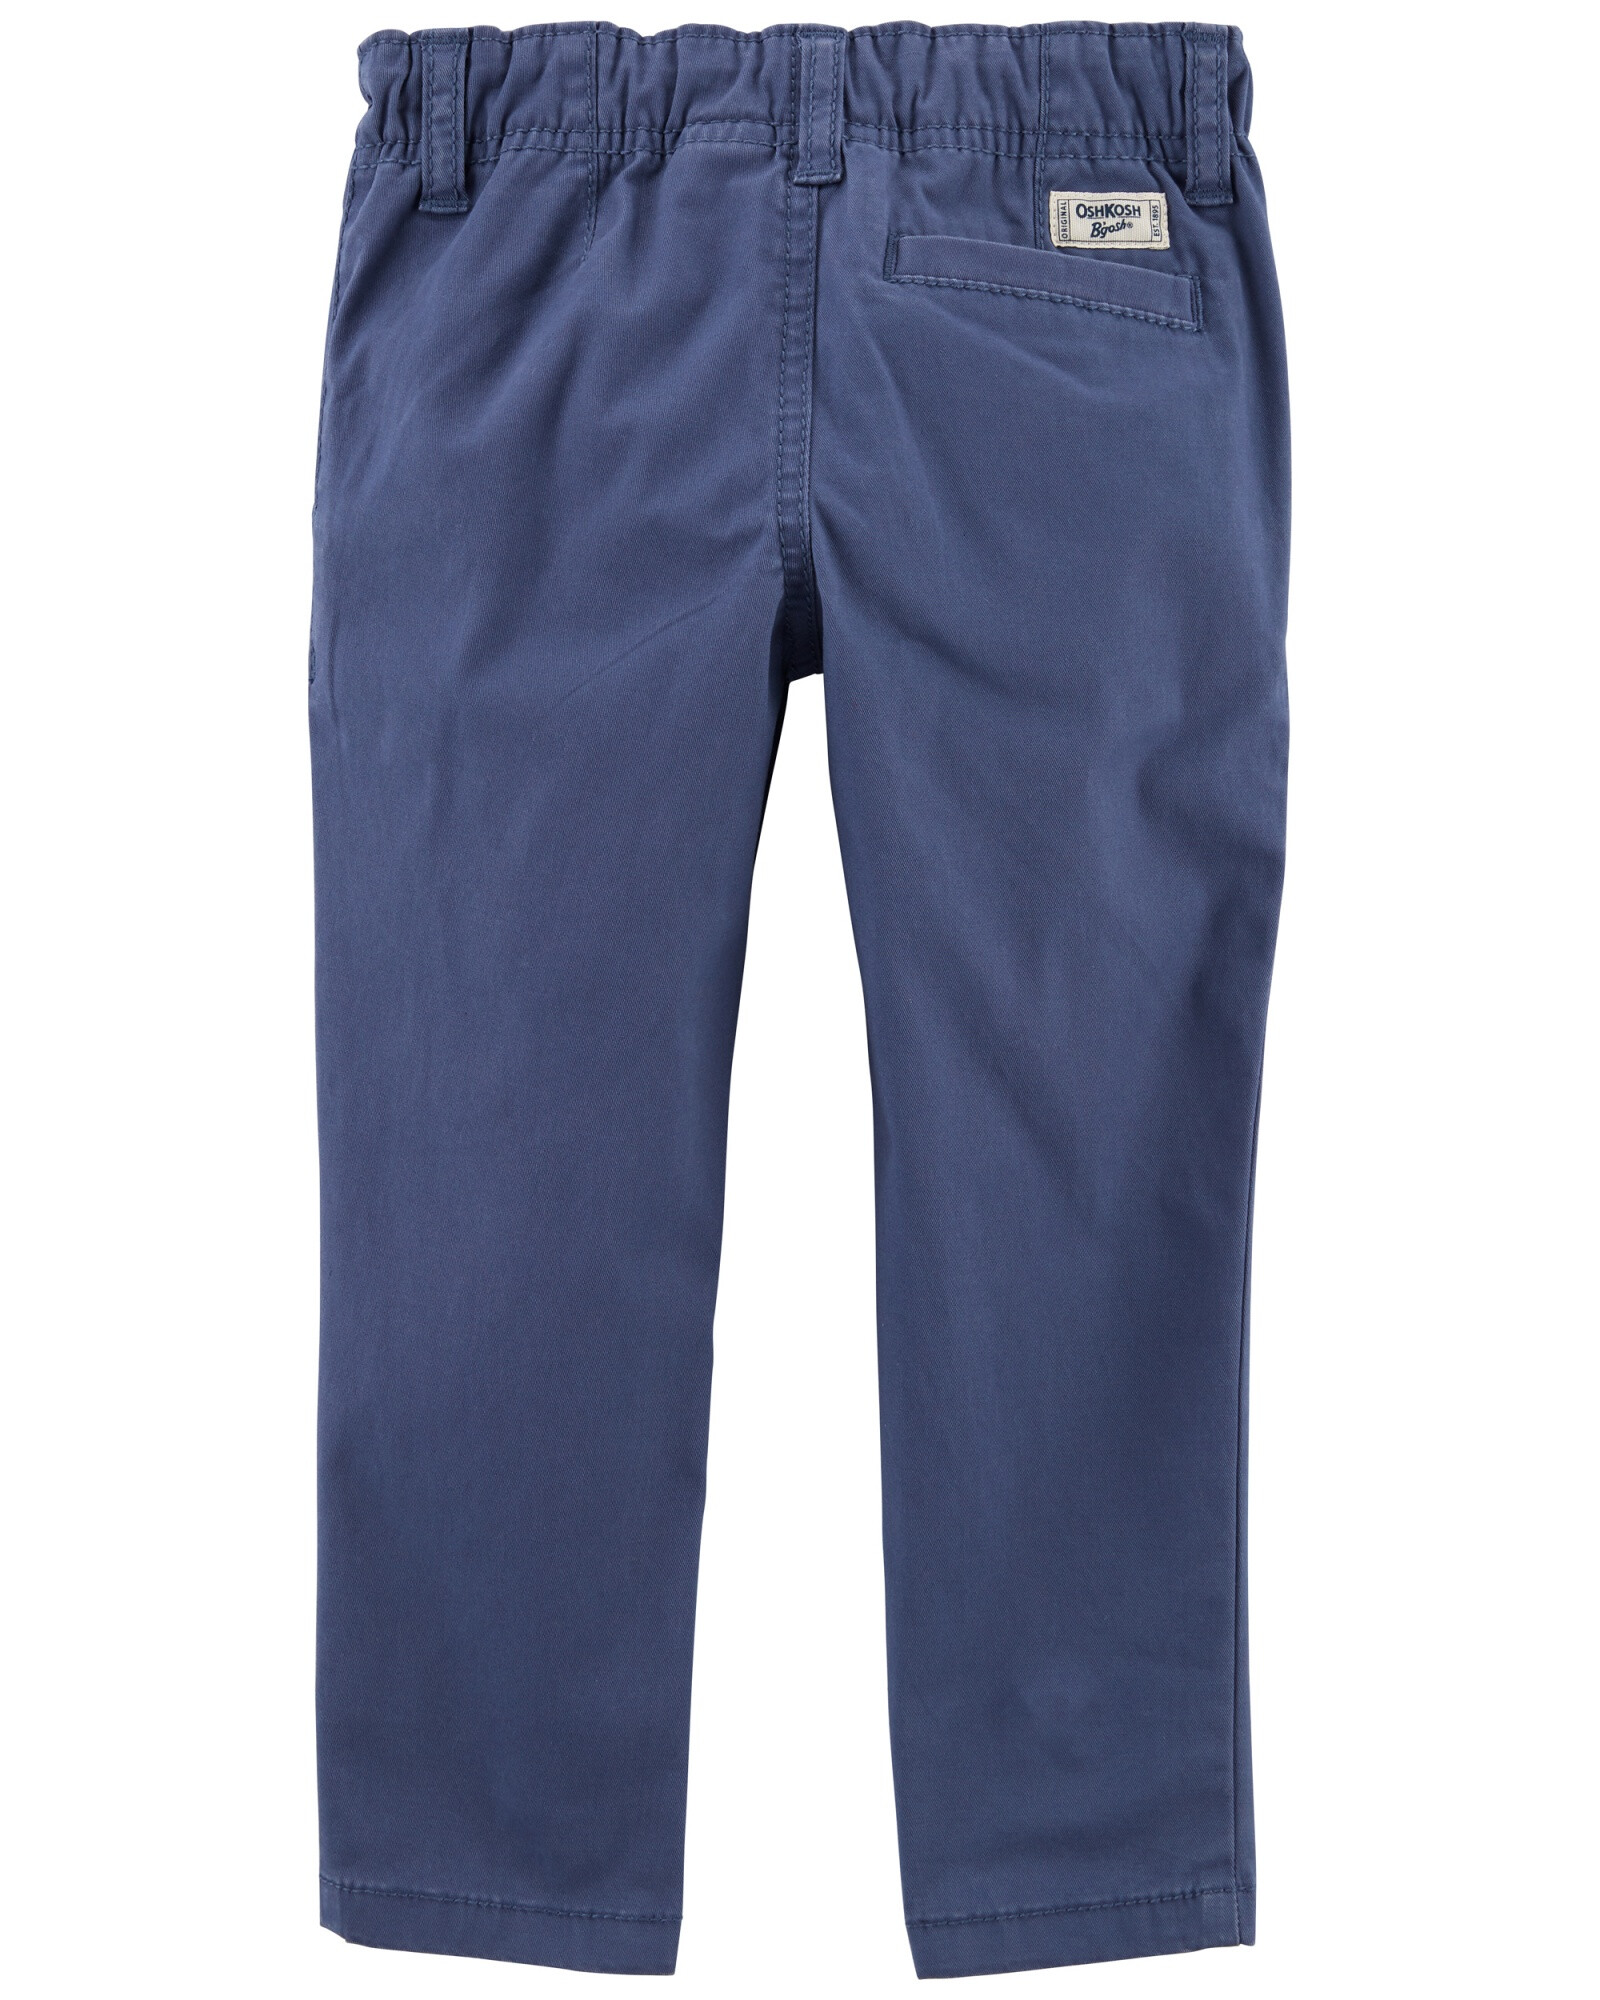 Pantalón de algodón, ajustado, azul. Talles 2-5T Sin color